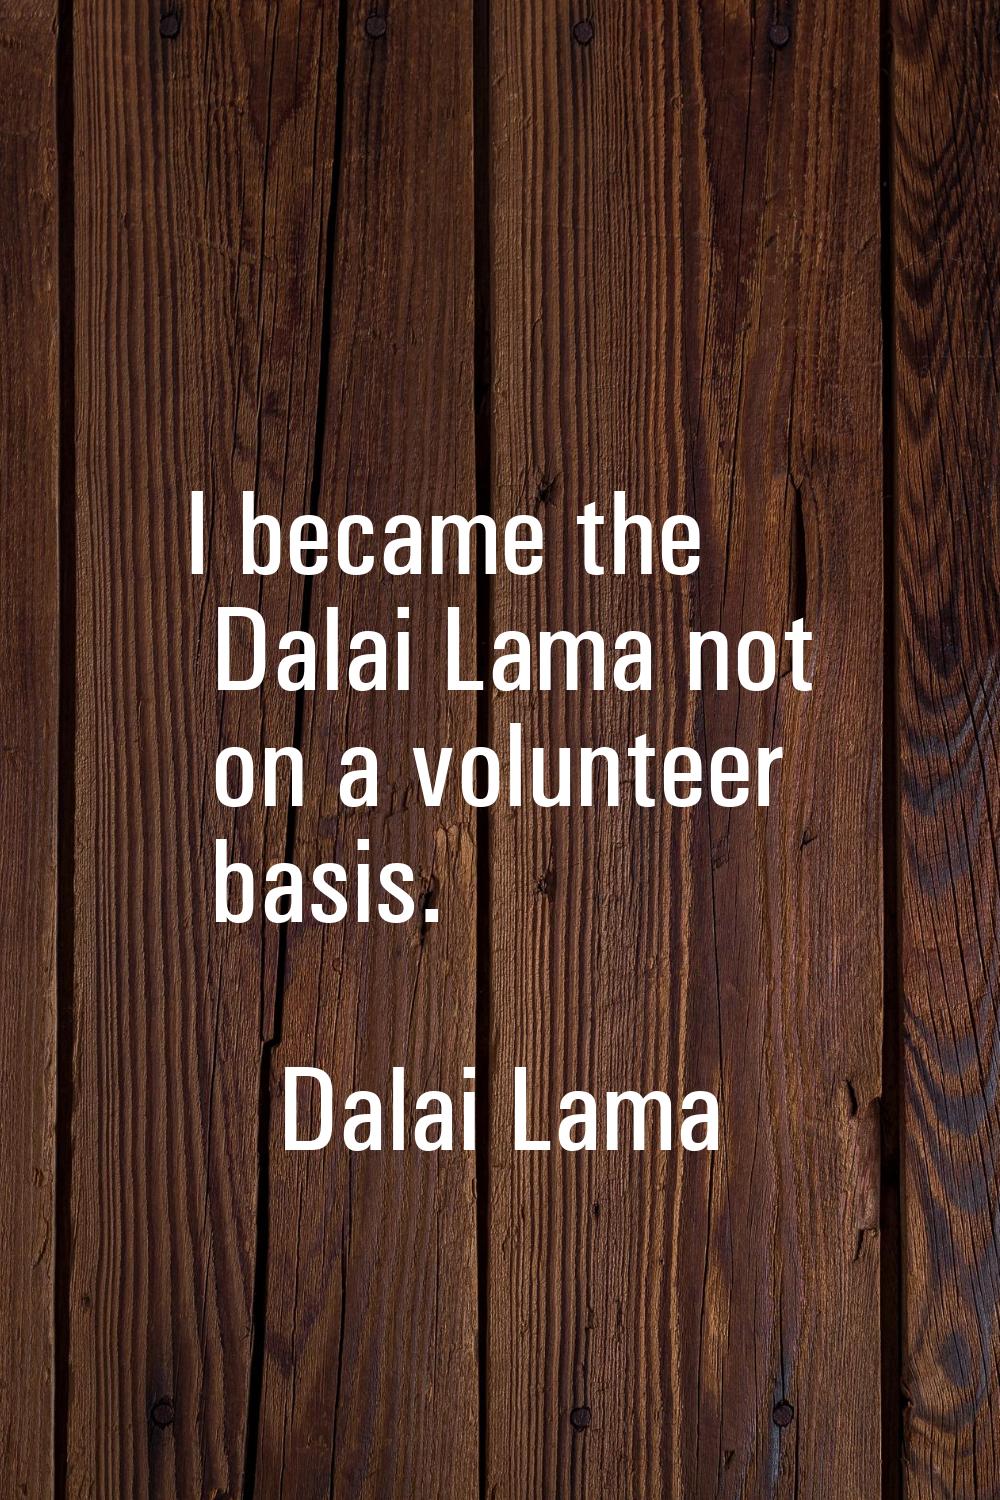 I became the Dalai Lama not on a volunteer basis.